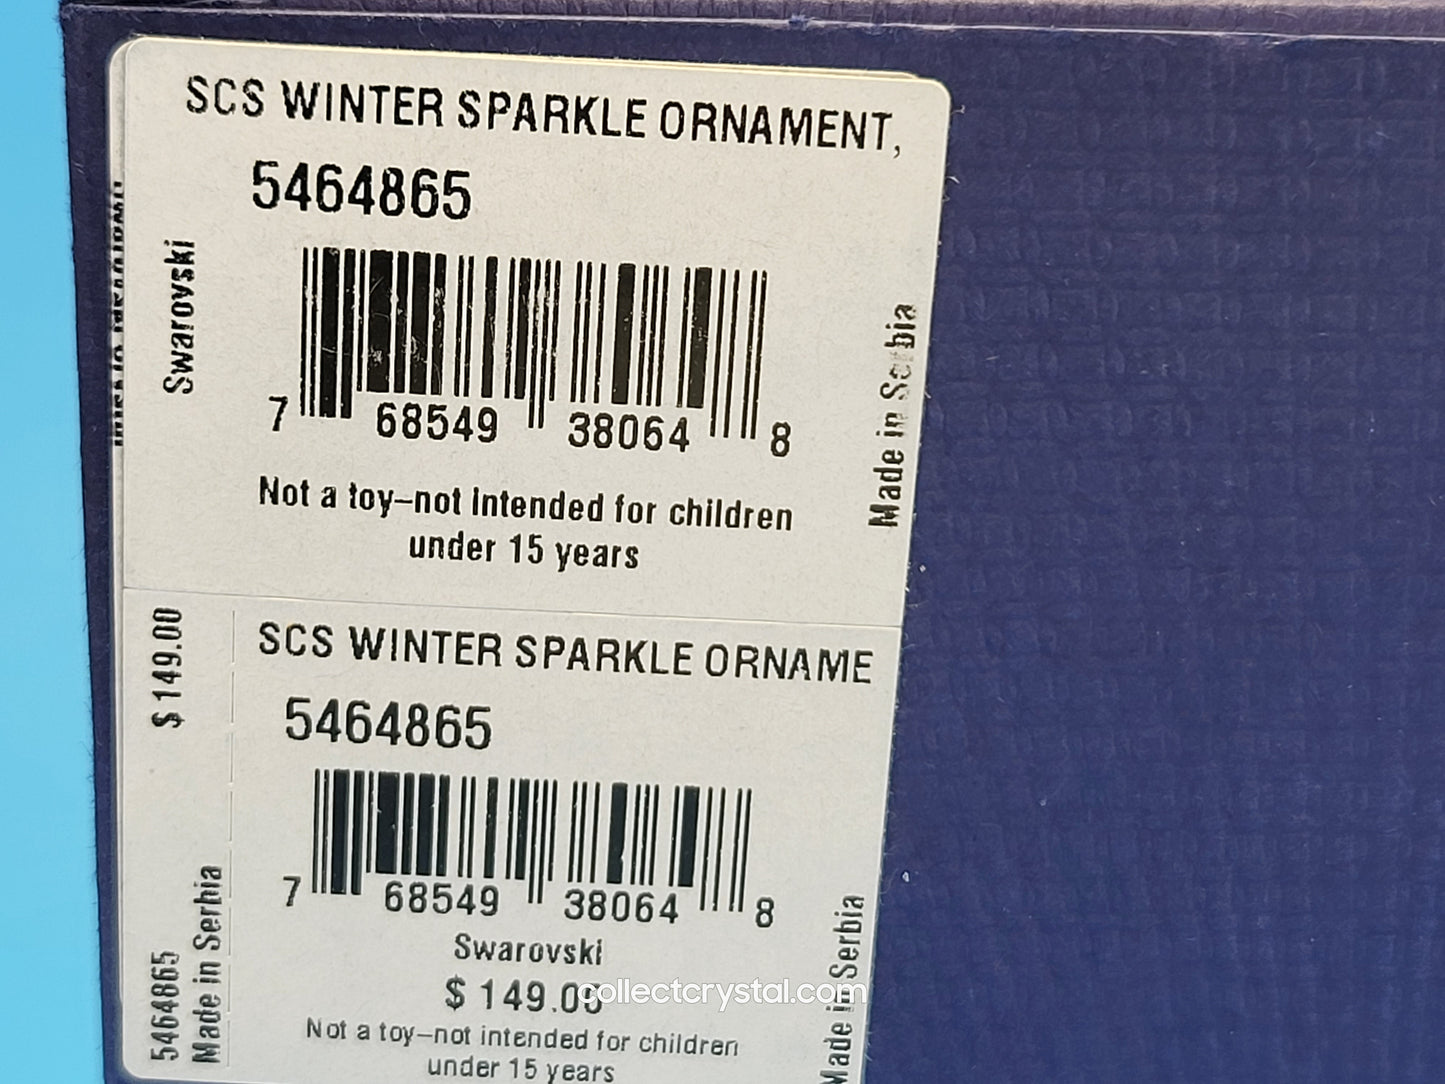 Winter Sparkle Ornament 2019 CHRISTMAS ORNAMENT – WINTER SPARKLE SCS 5464865